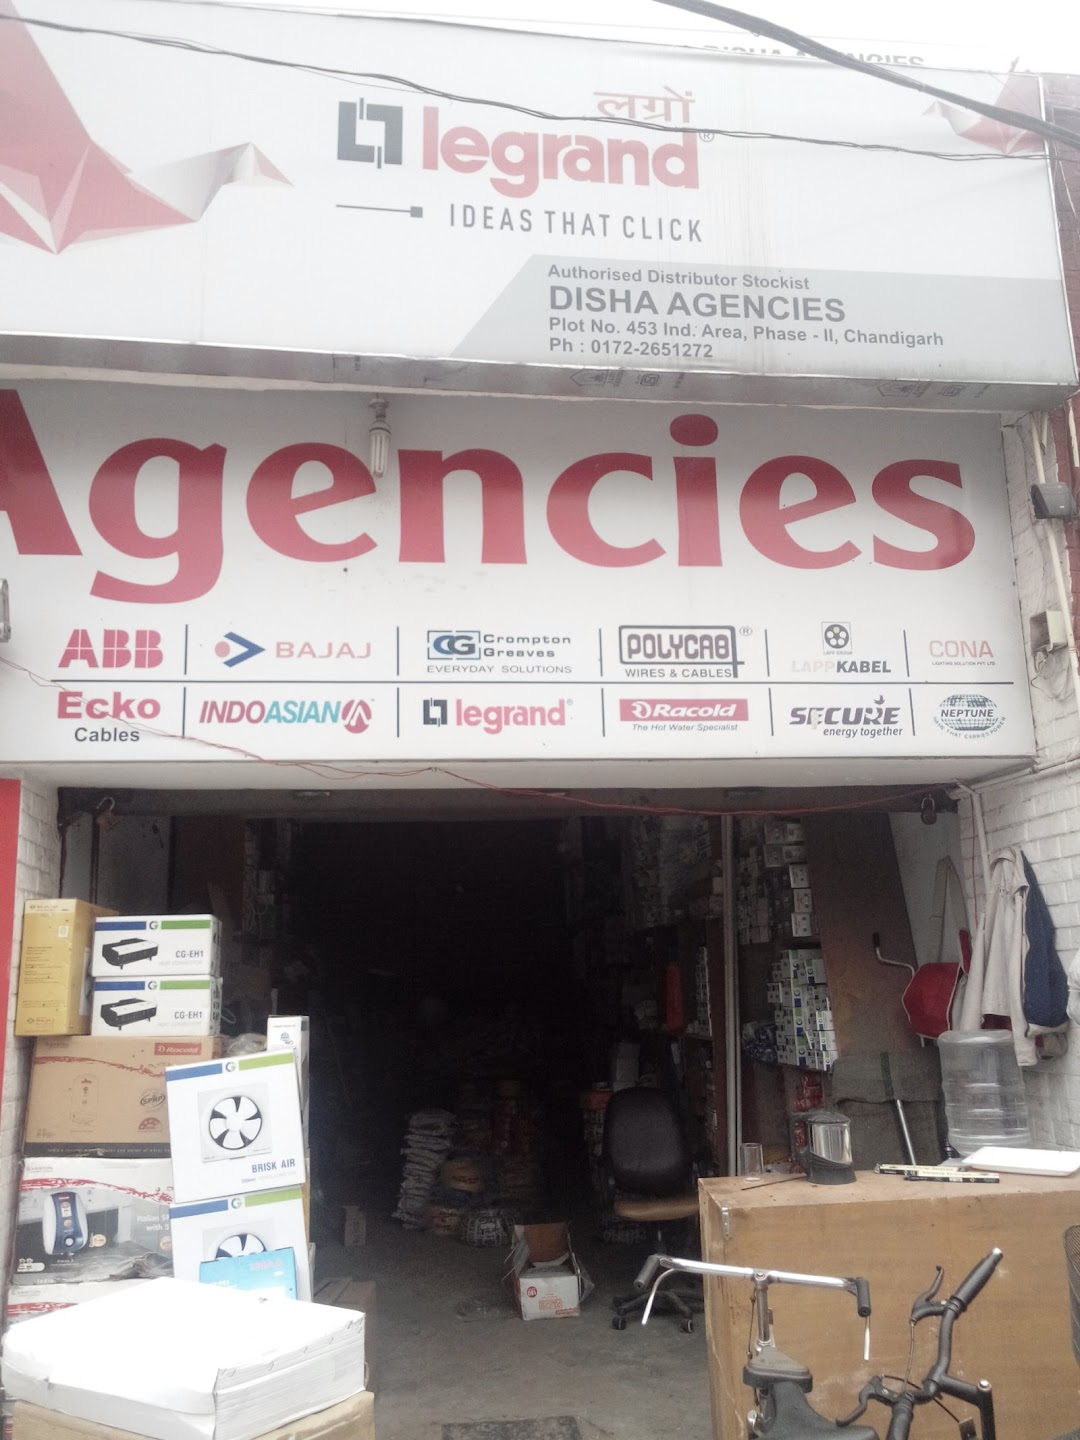 Disha Agencies